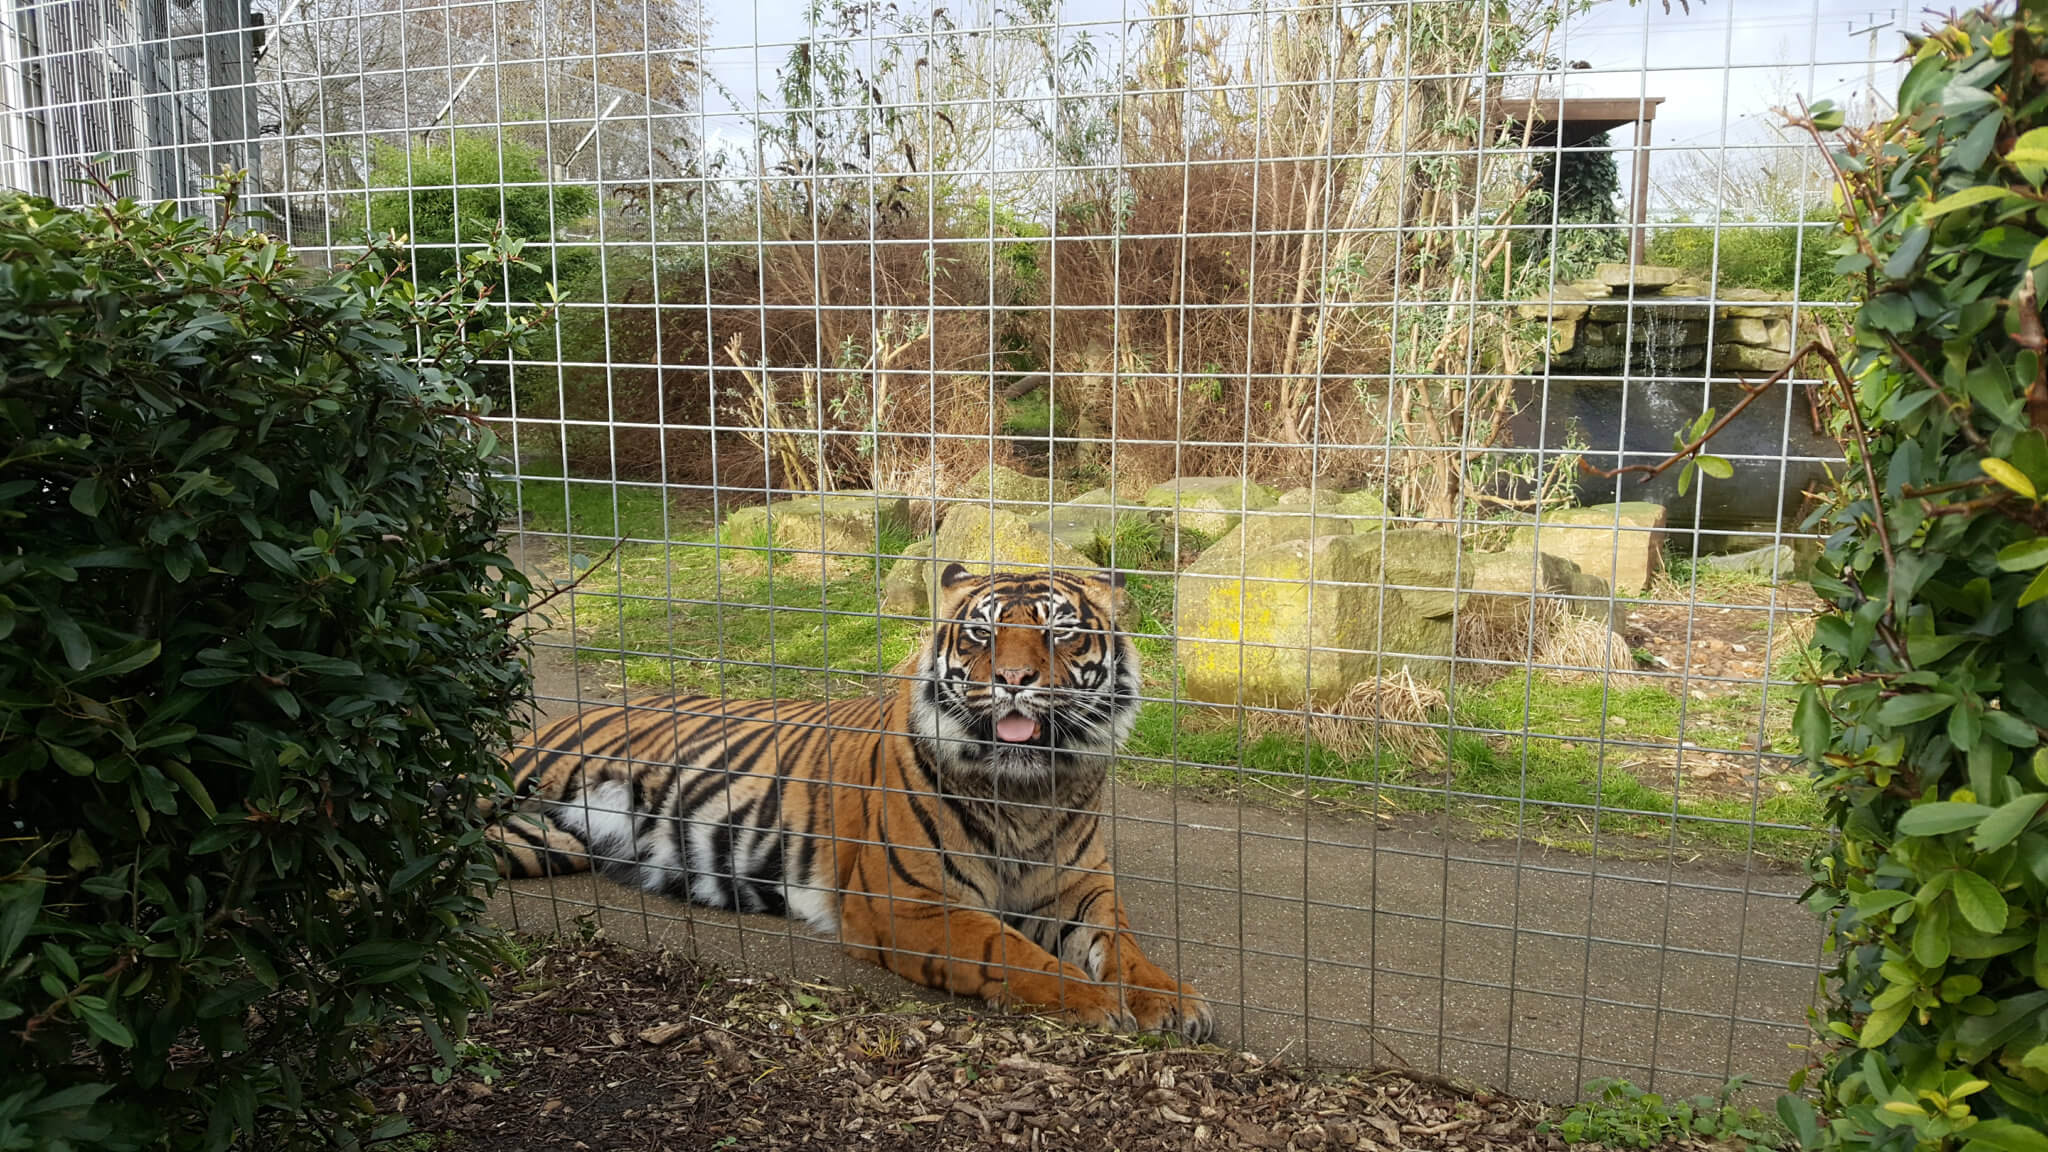 Sumatran Tigers in their enclosure